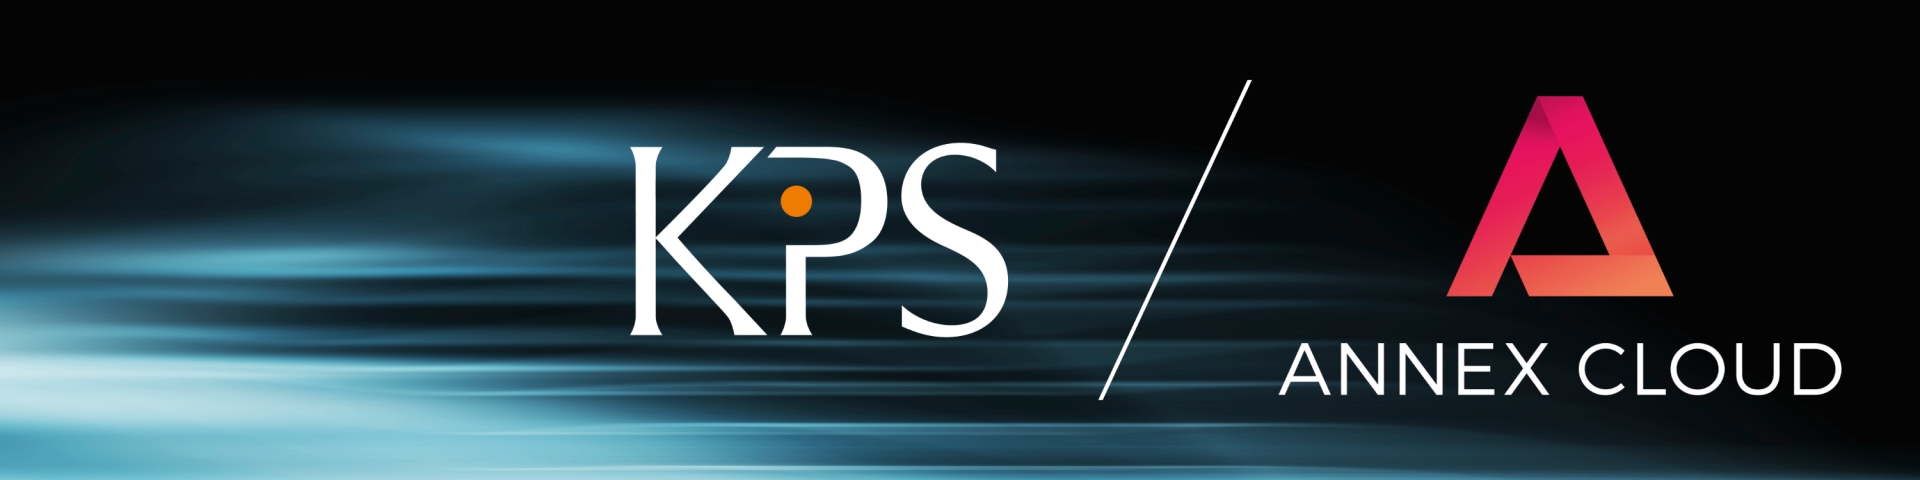 Logos von KPS und Annex Cloud auf abstraktem Hintergrund